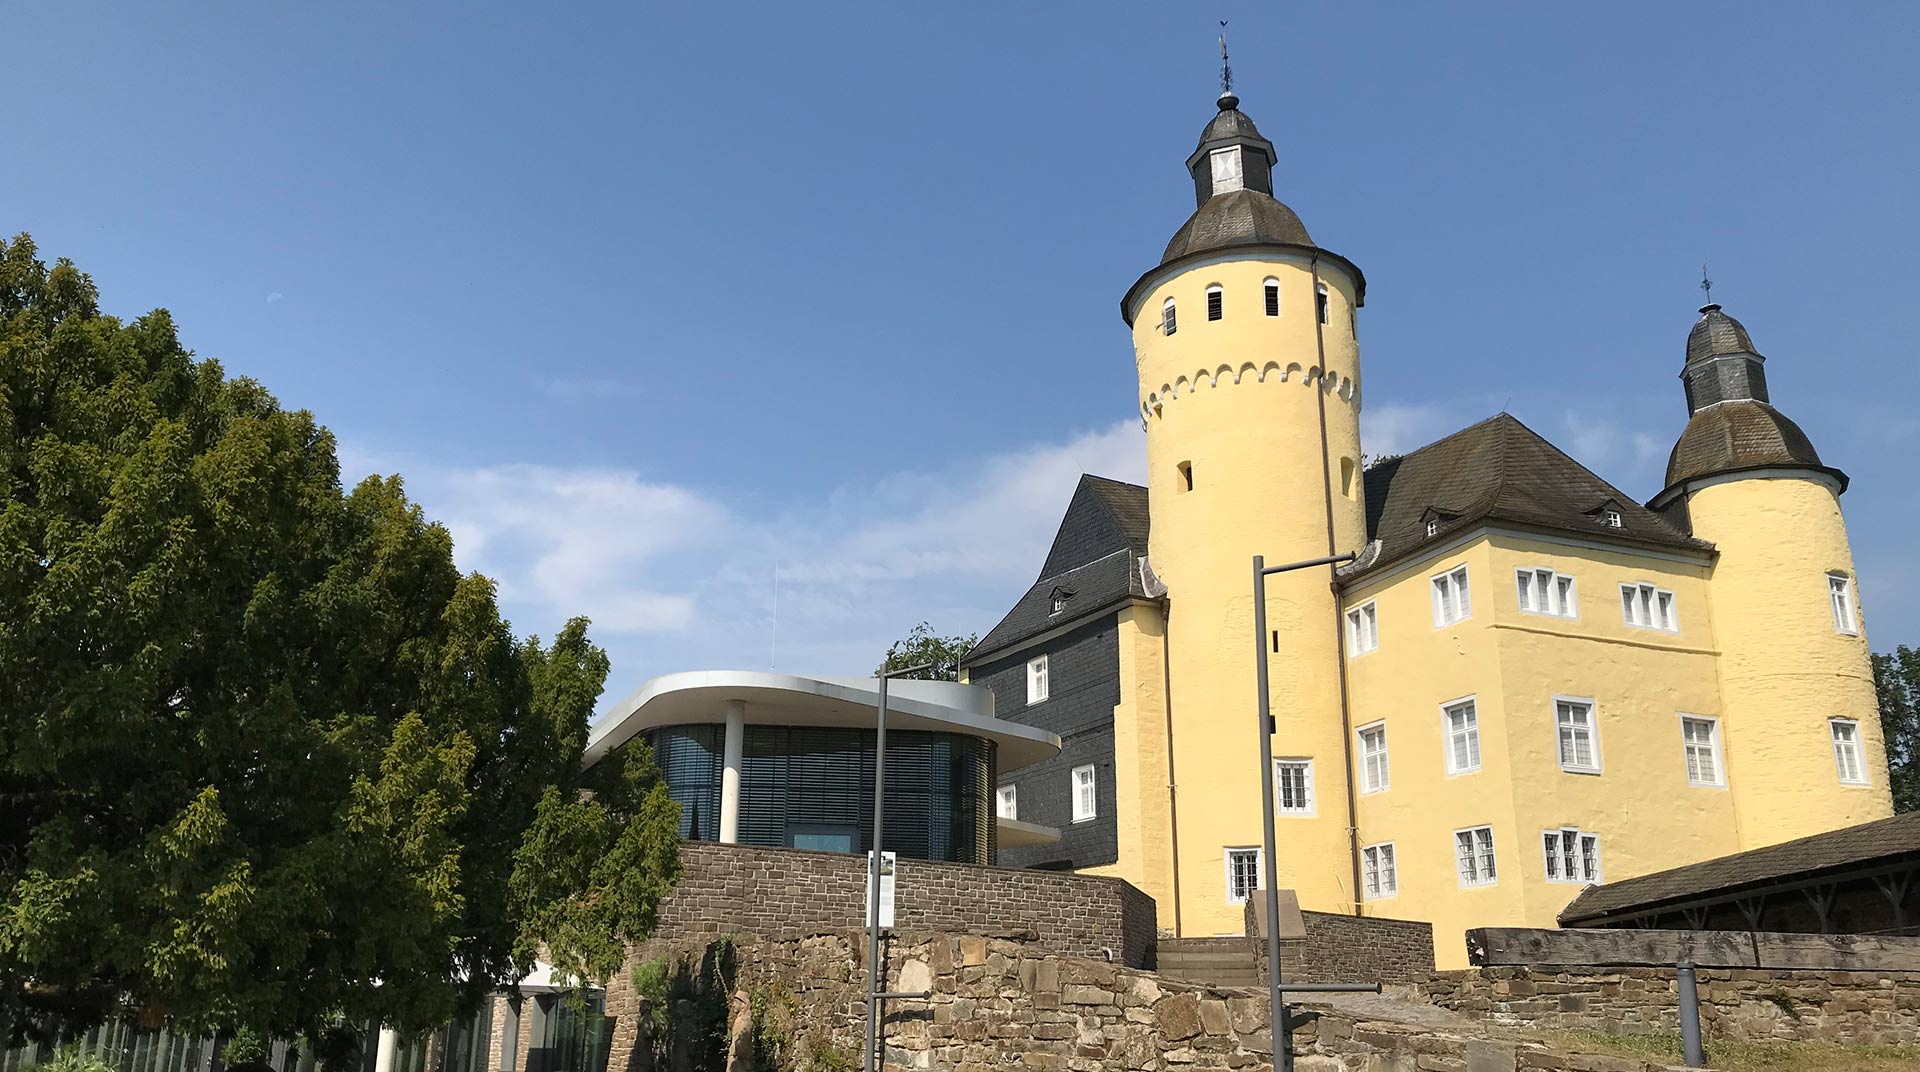 KulturPass für das Museum und Forum Schloss Homburg